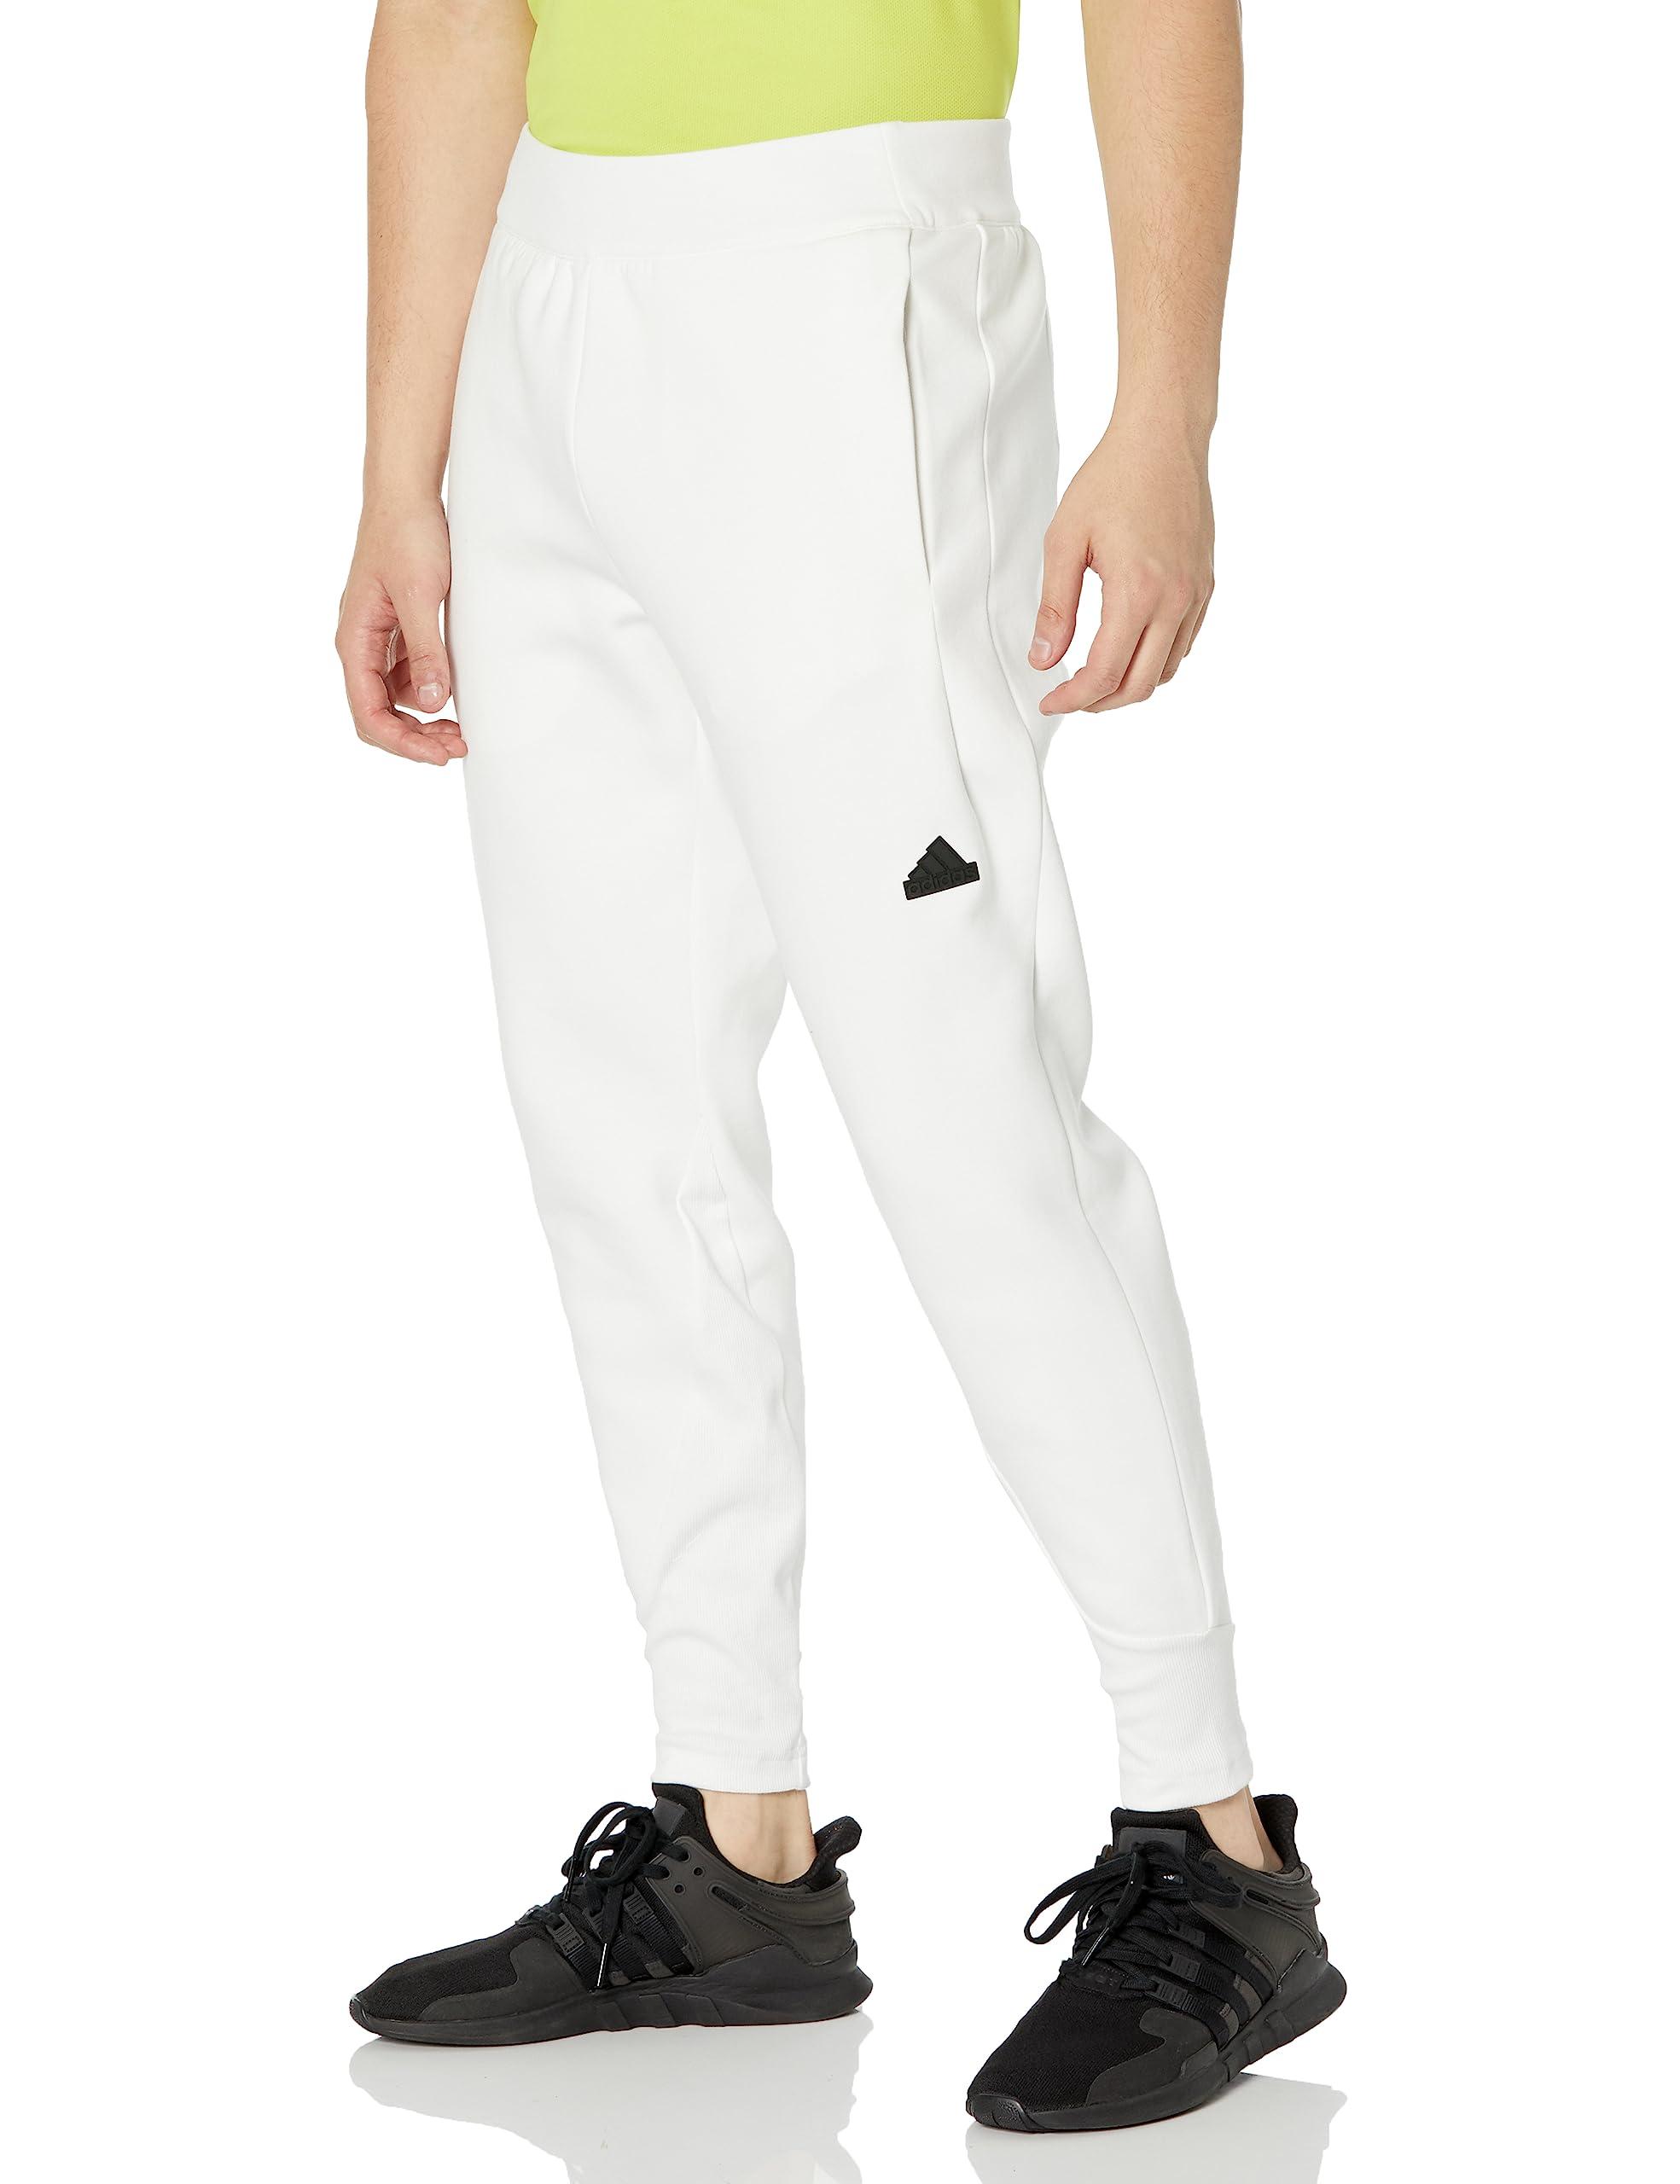 Z.n.e. Premium Pants in White Men |